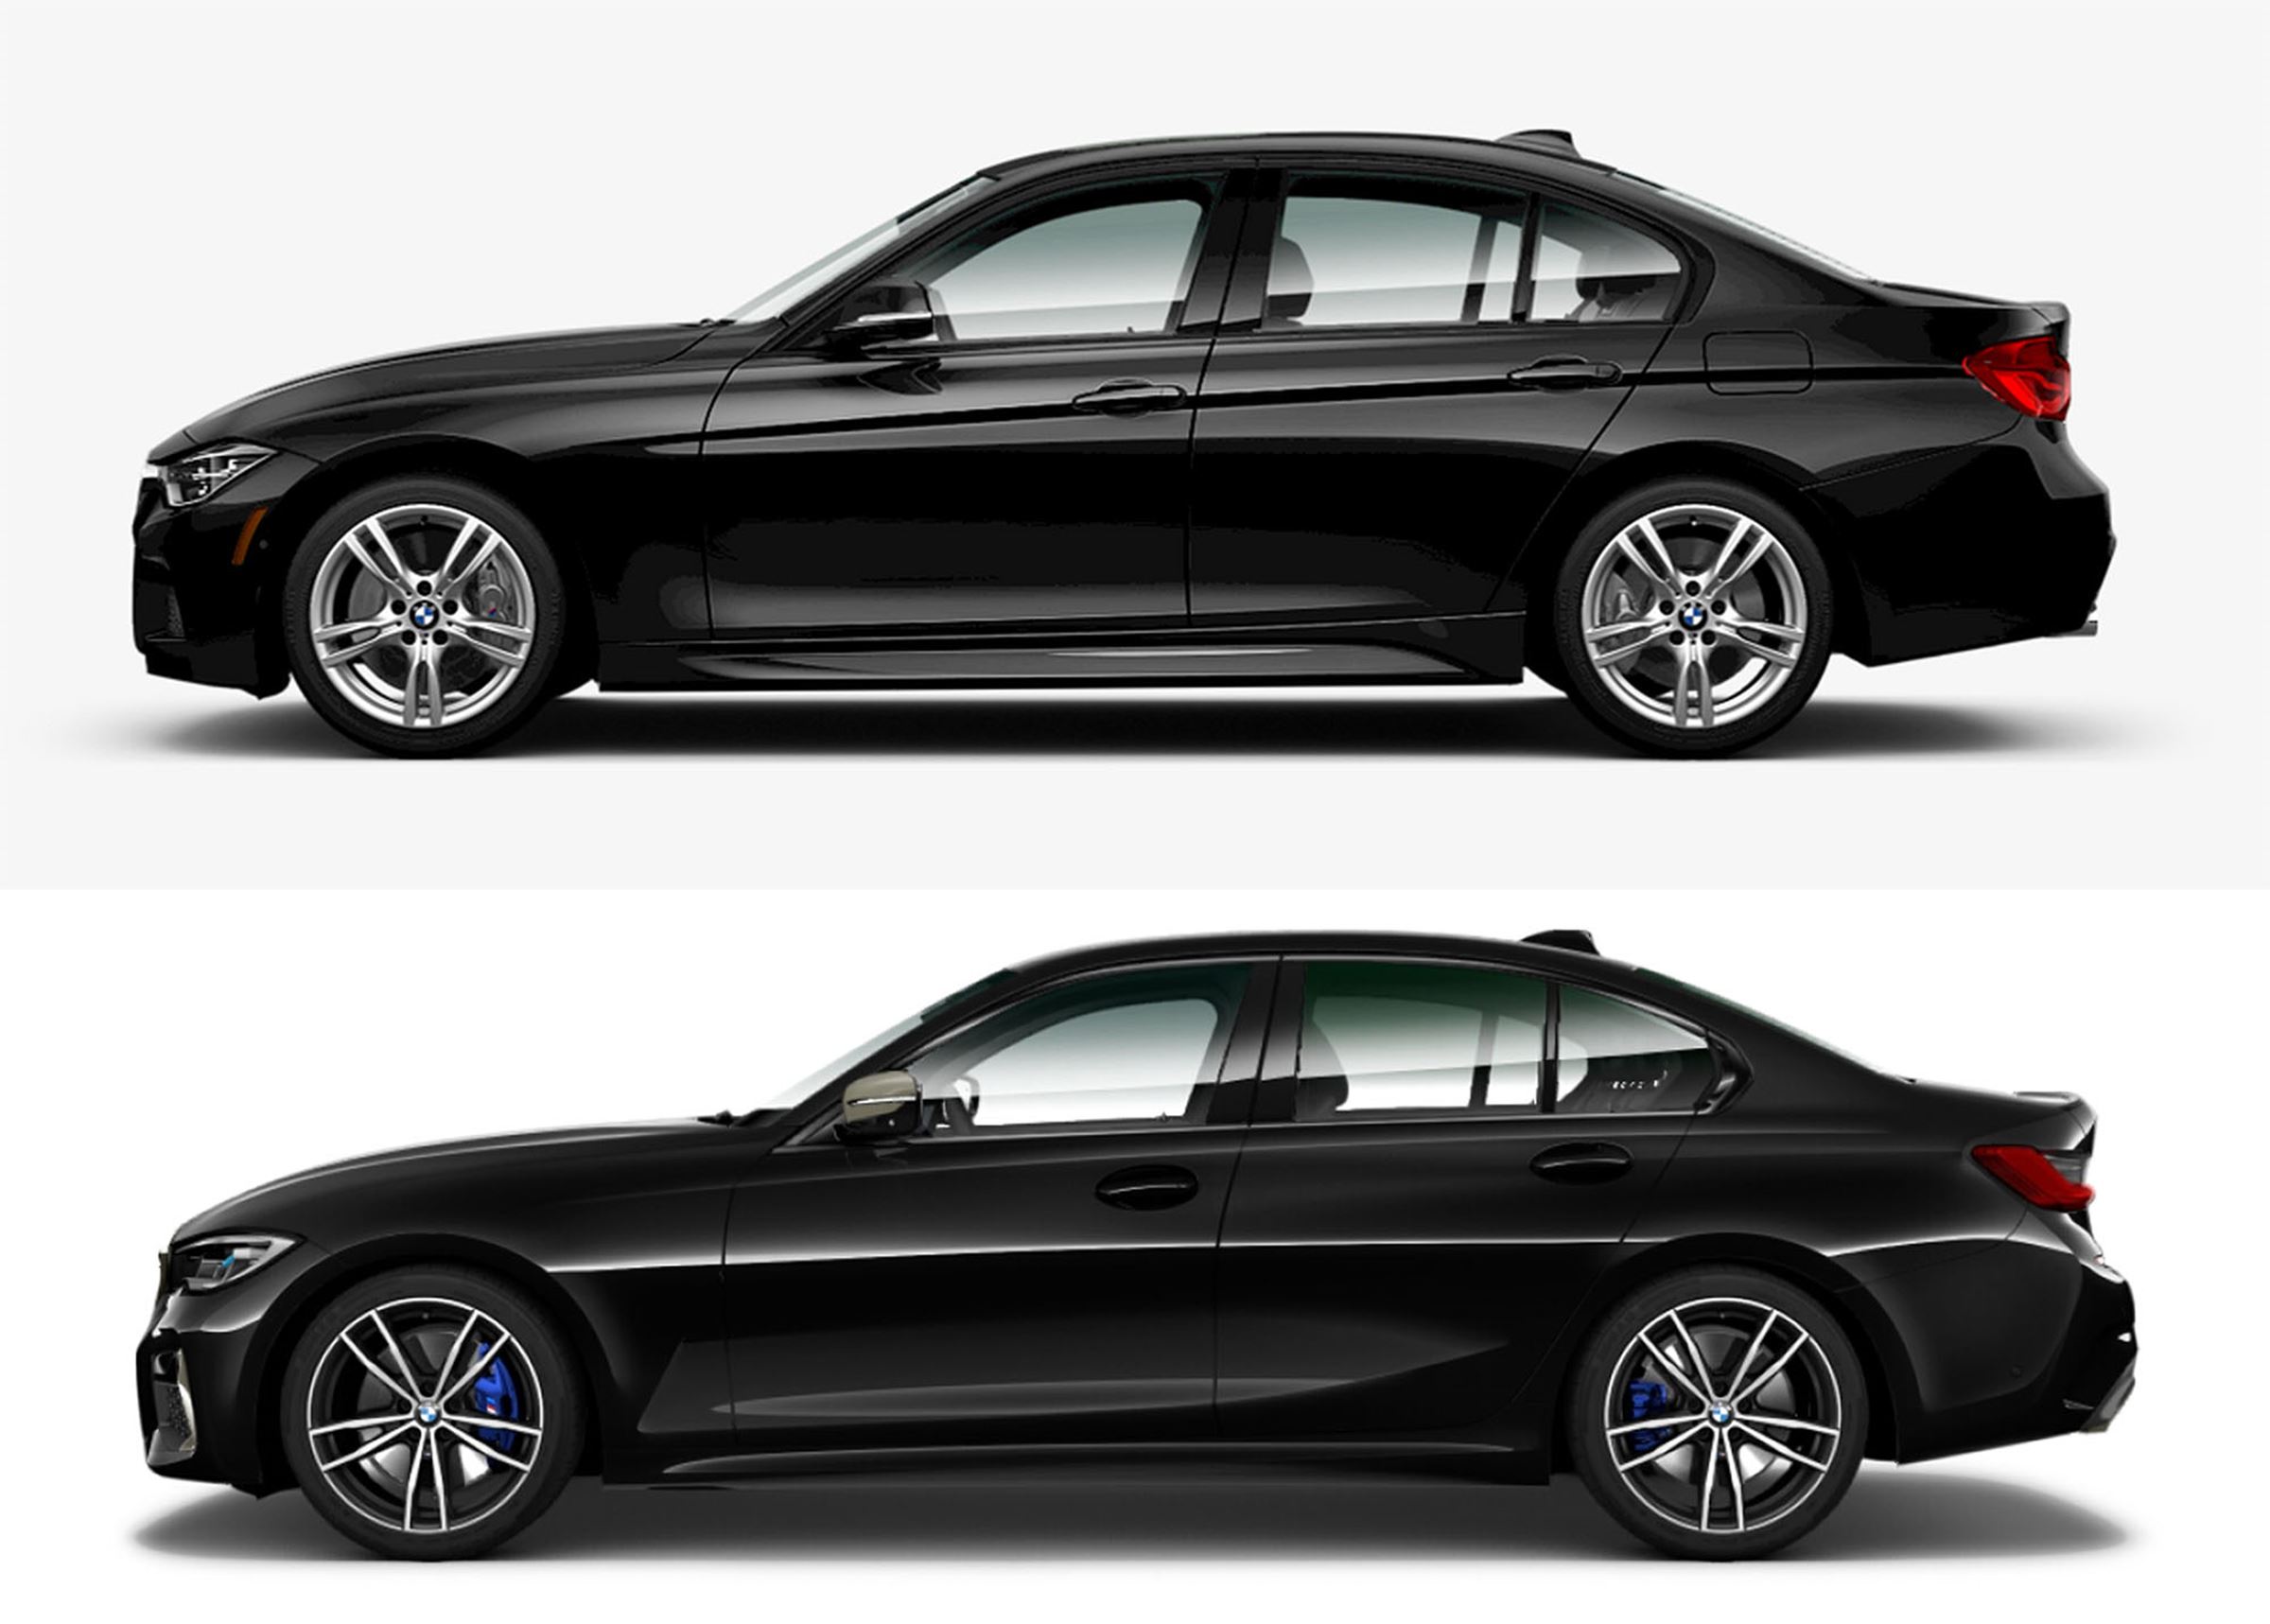 Oto nowe BMW serii 3 G20. Mamy oficjalne zdjęcia. Na razie